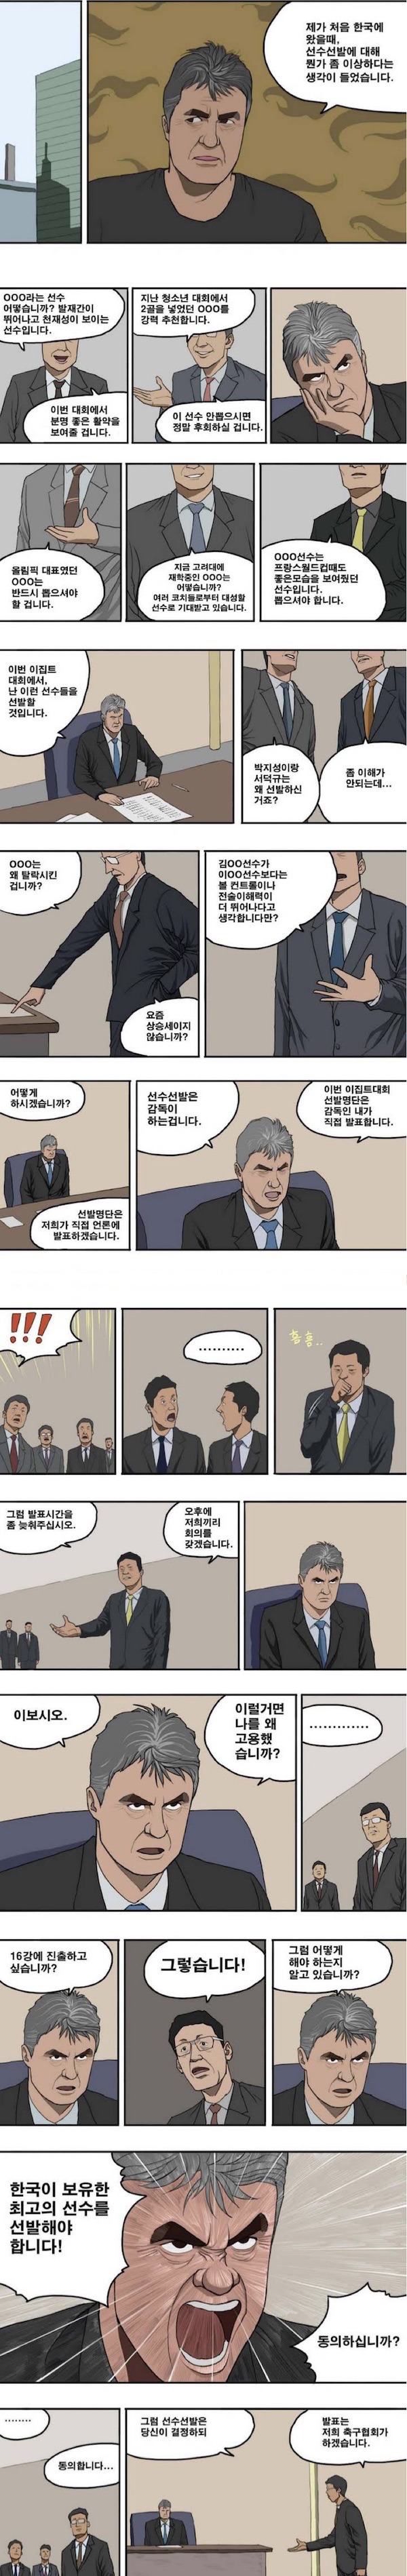 대한민국 월드컵 4강 신화의 비화